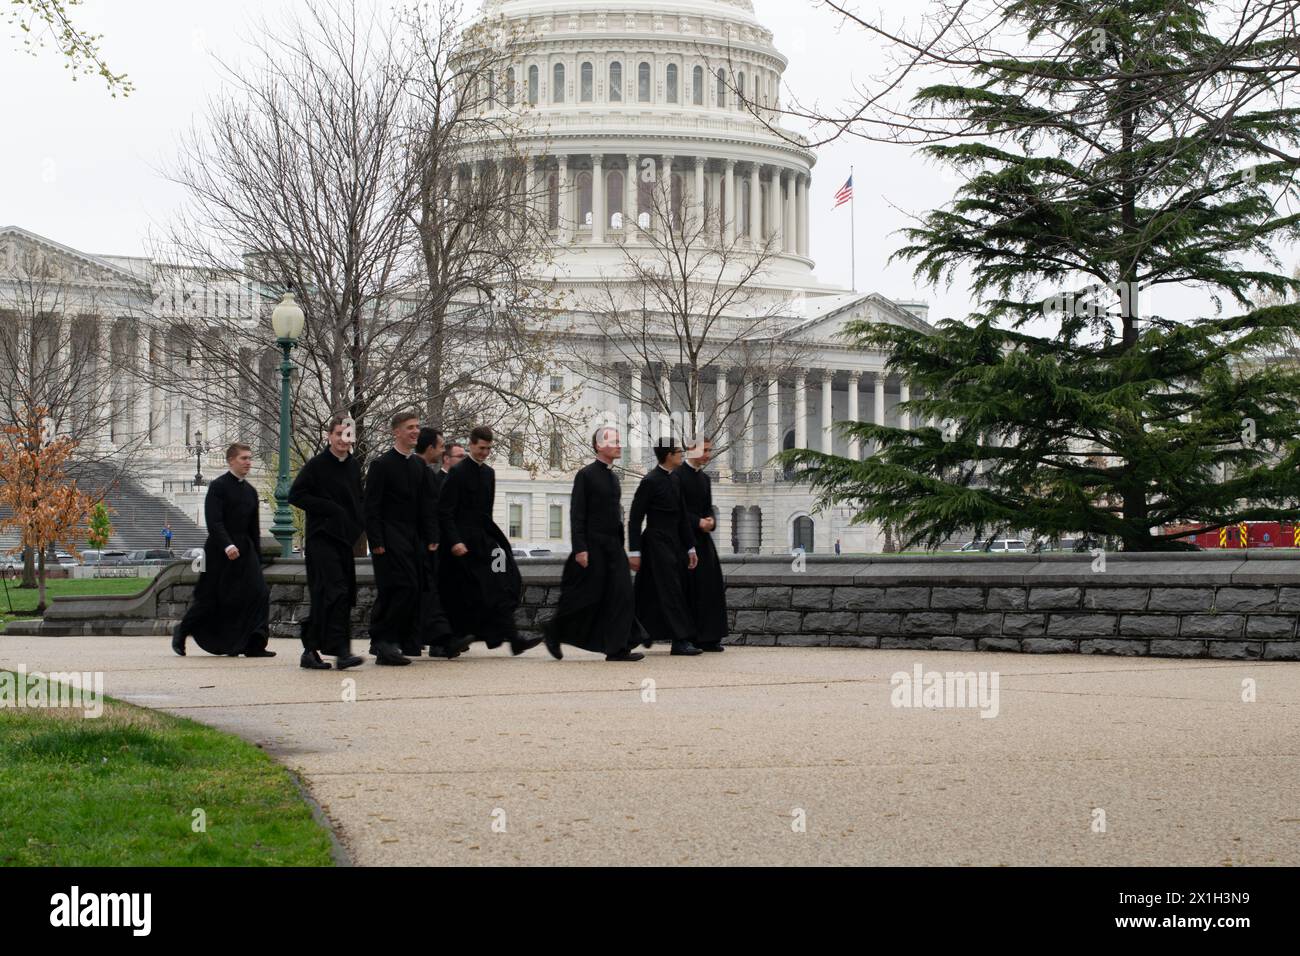 Bâtiment du Capitole avec groupe d'hommes en cassoutes noires. Concept religion et État. Washington DC, États-Unis Banque D'Images